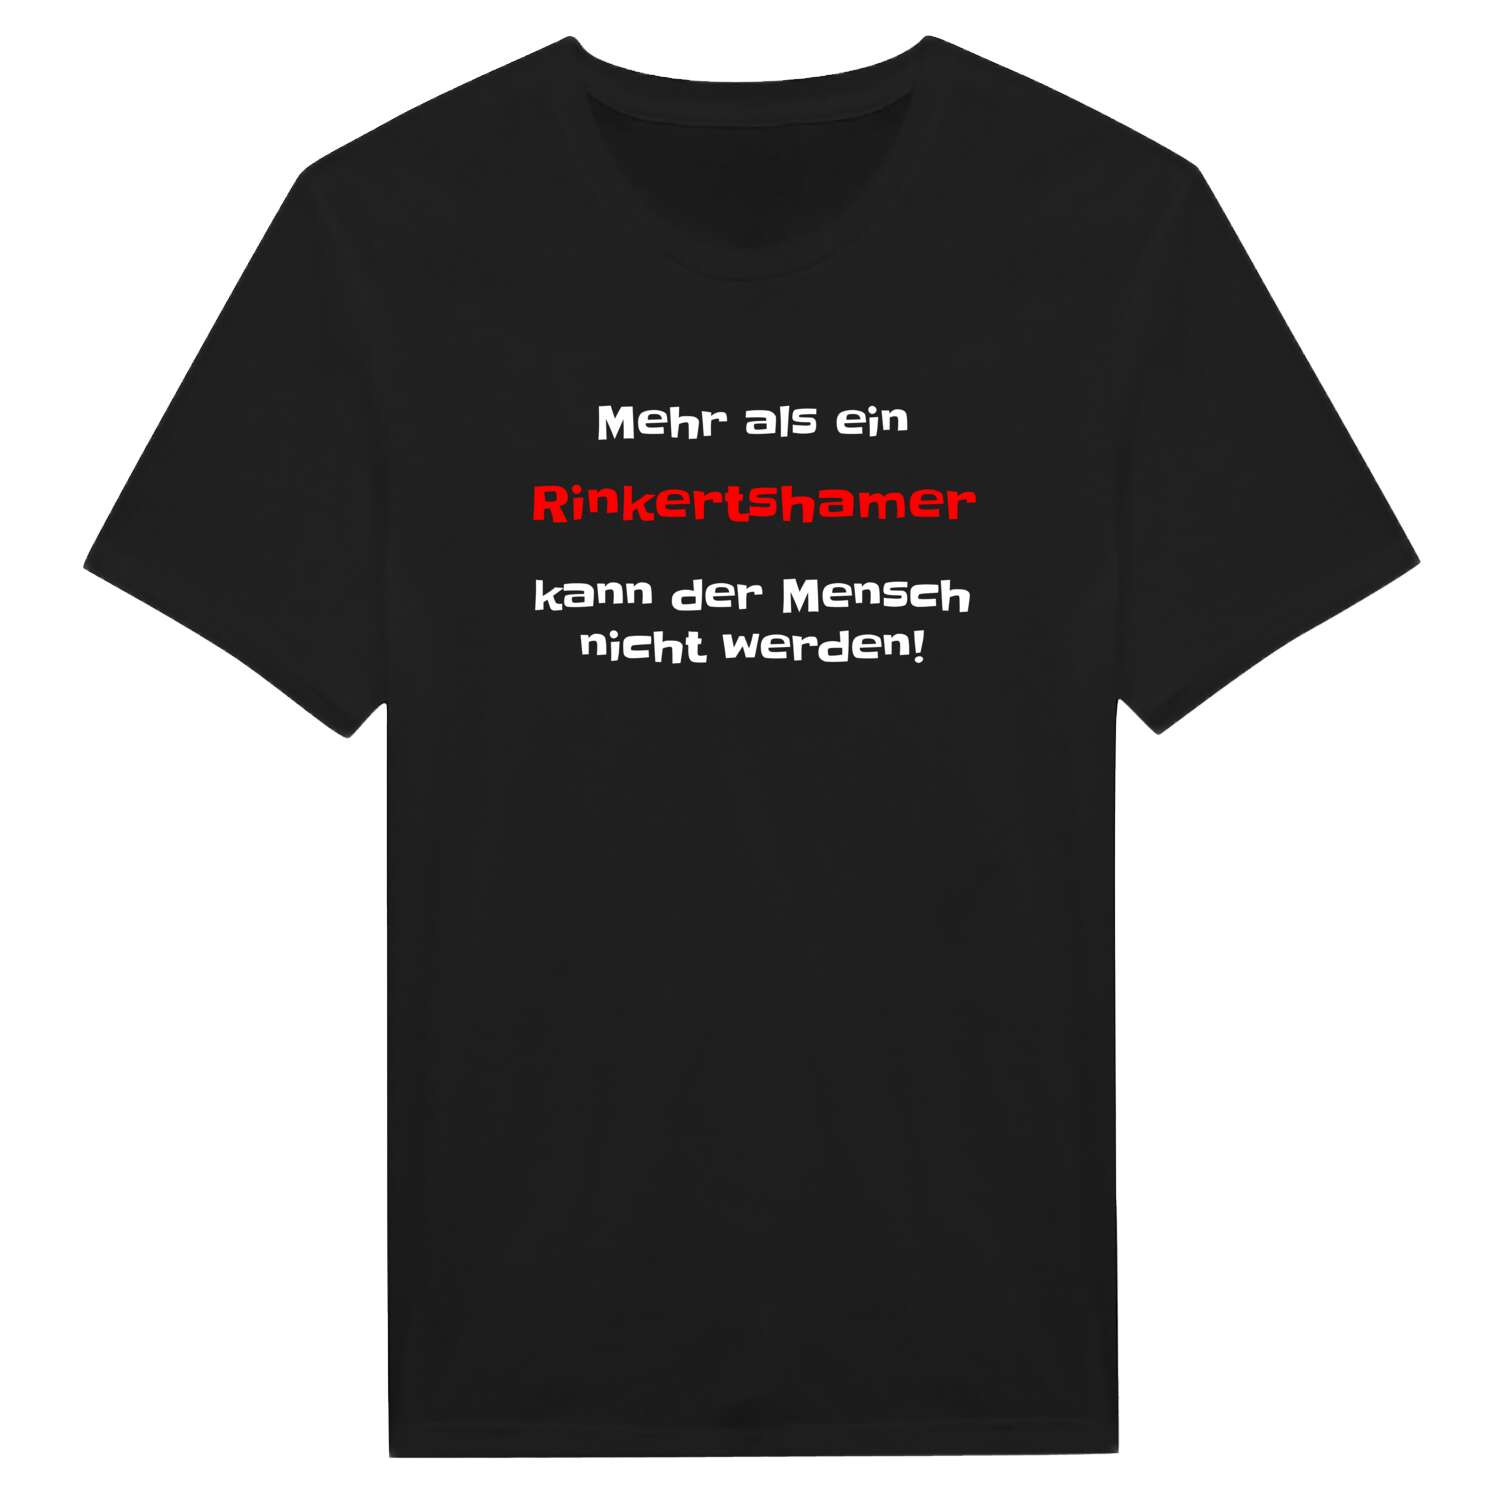 Rinkertsham T-Shirt »Mehr als ein«